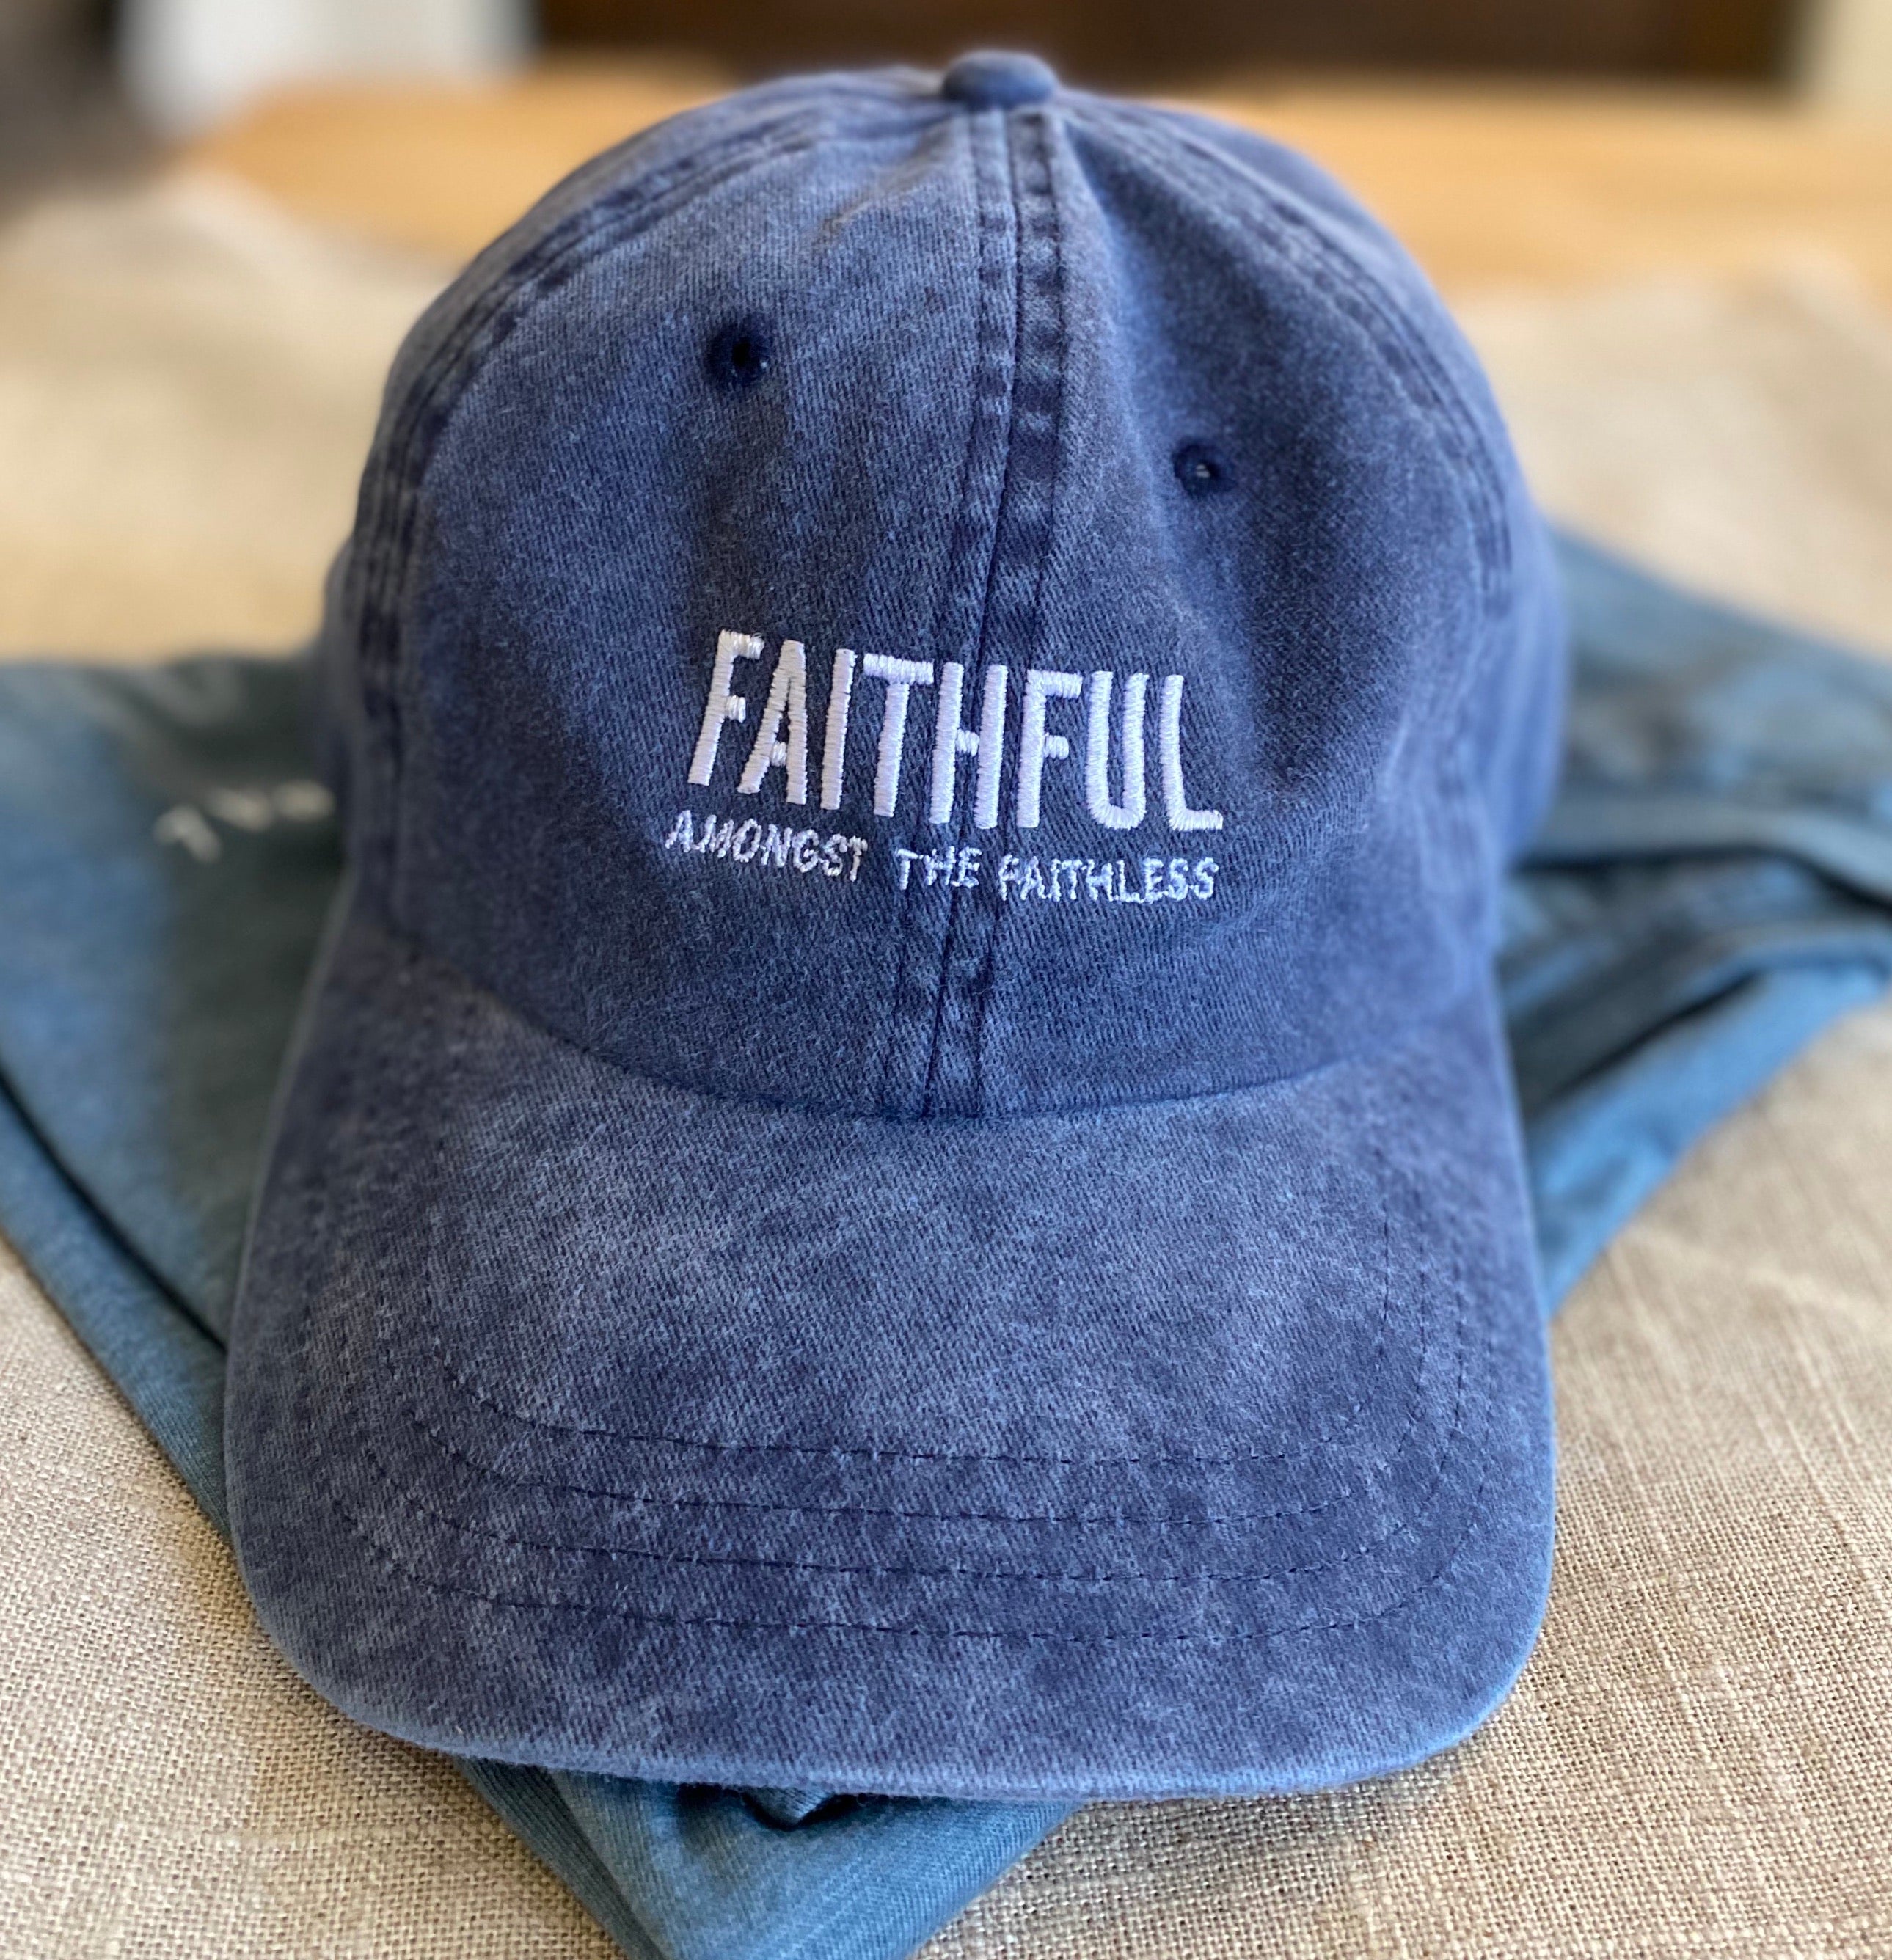 Faithful Amongst the faithless!